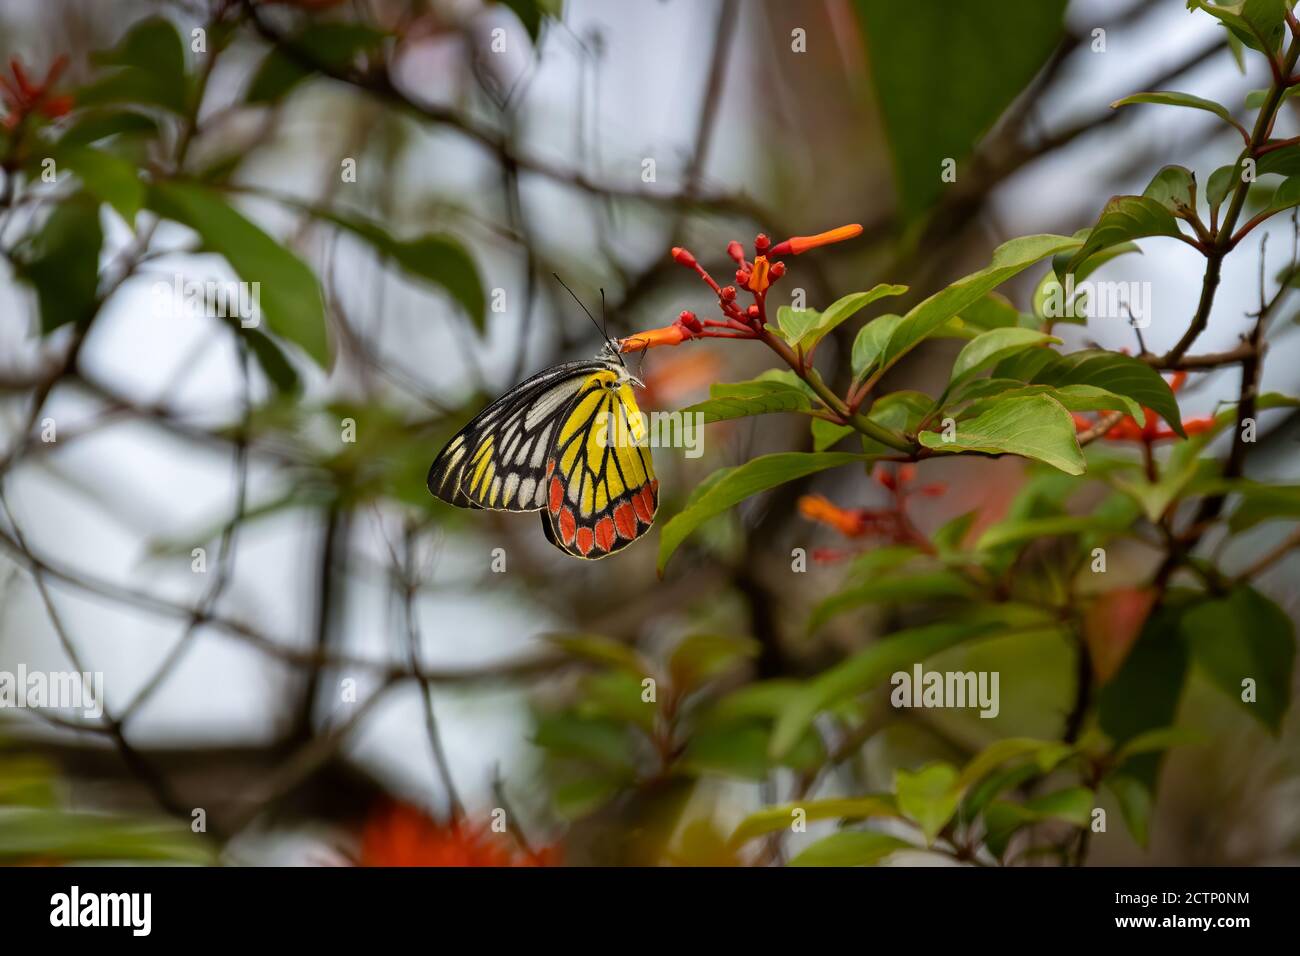 Un papillon commun Jezebel (Delias eucharis) se nourrit de nectar de quelques fleurs dans le jardin. Banque D'Images